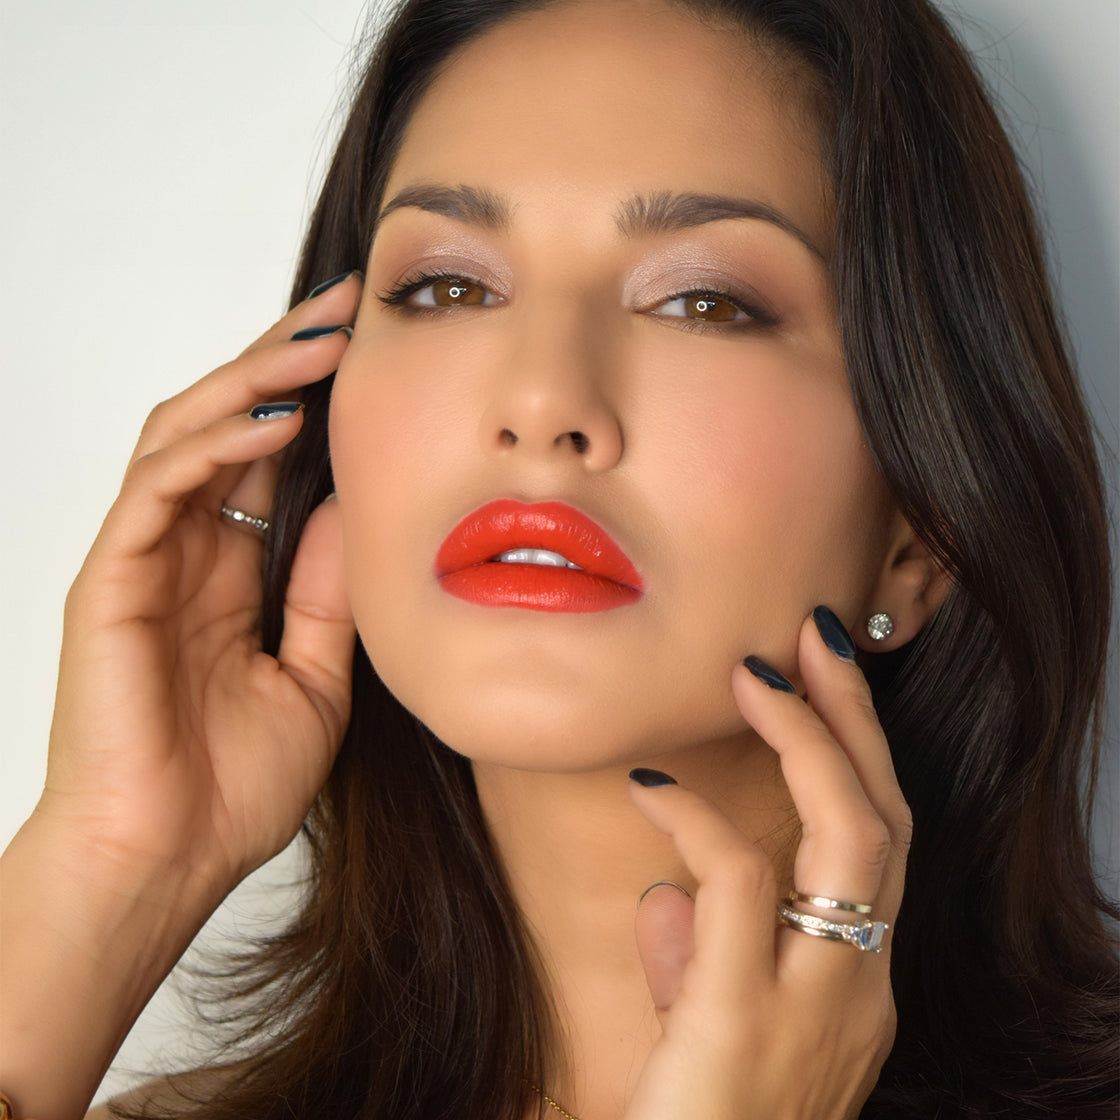 Red Carpet - Luxe Matte Lipstick-cruelty free cosmetics-Sunny Leone